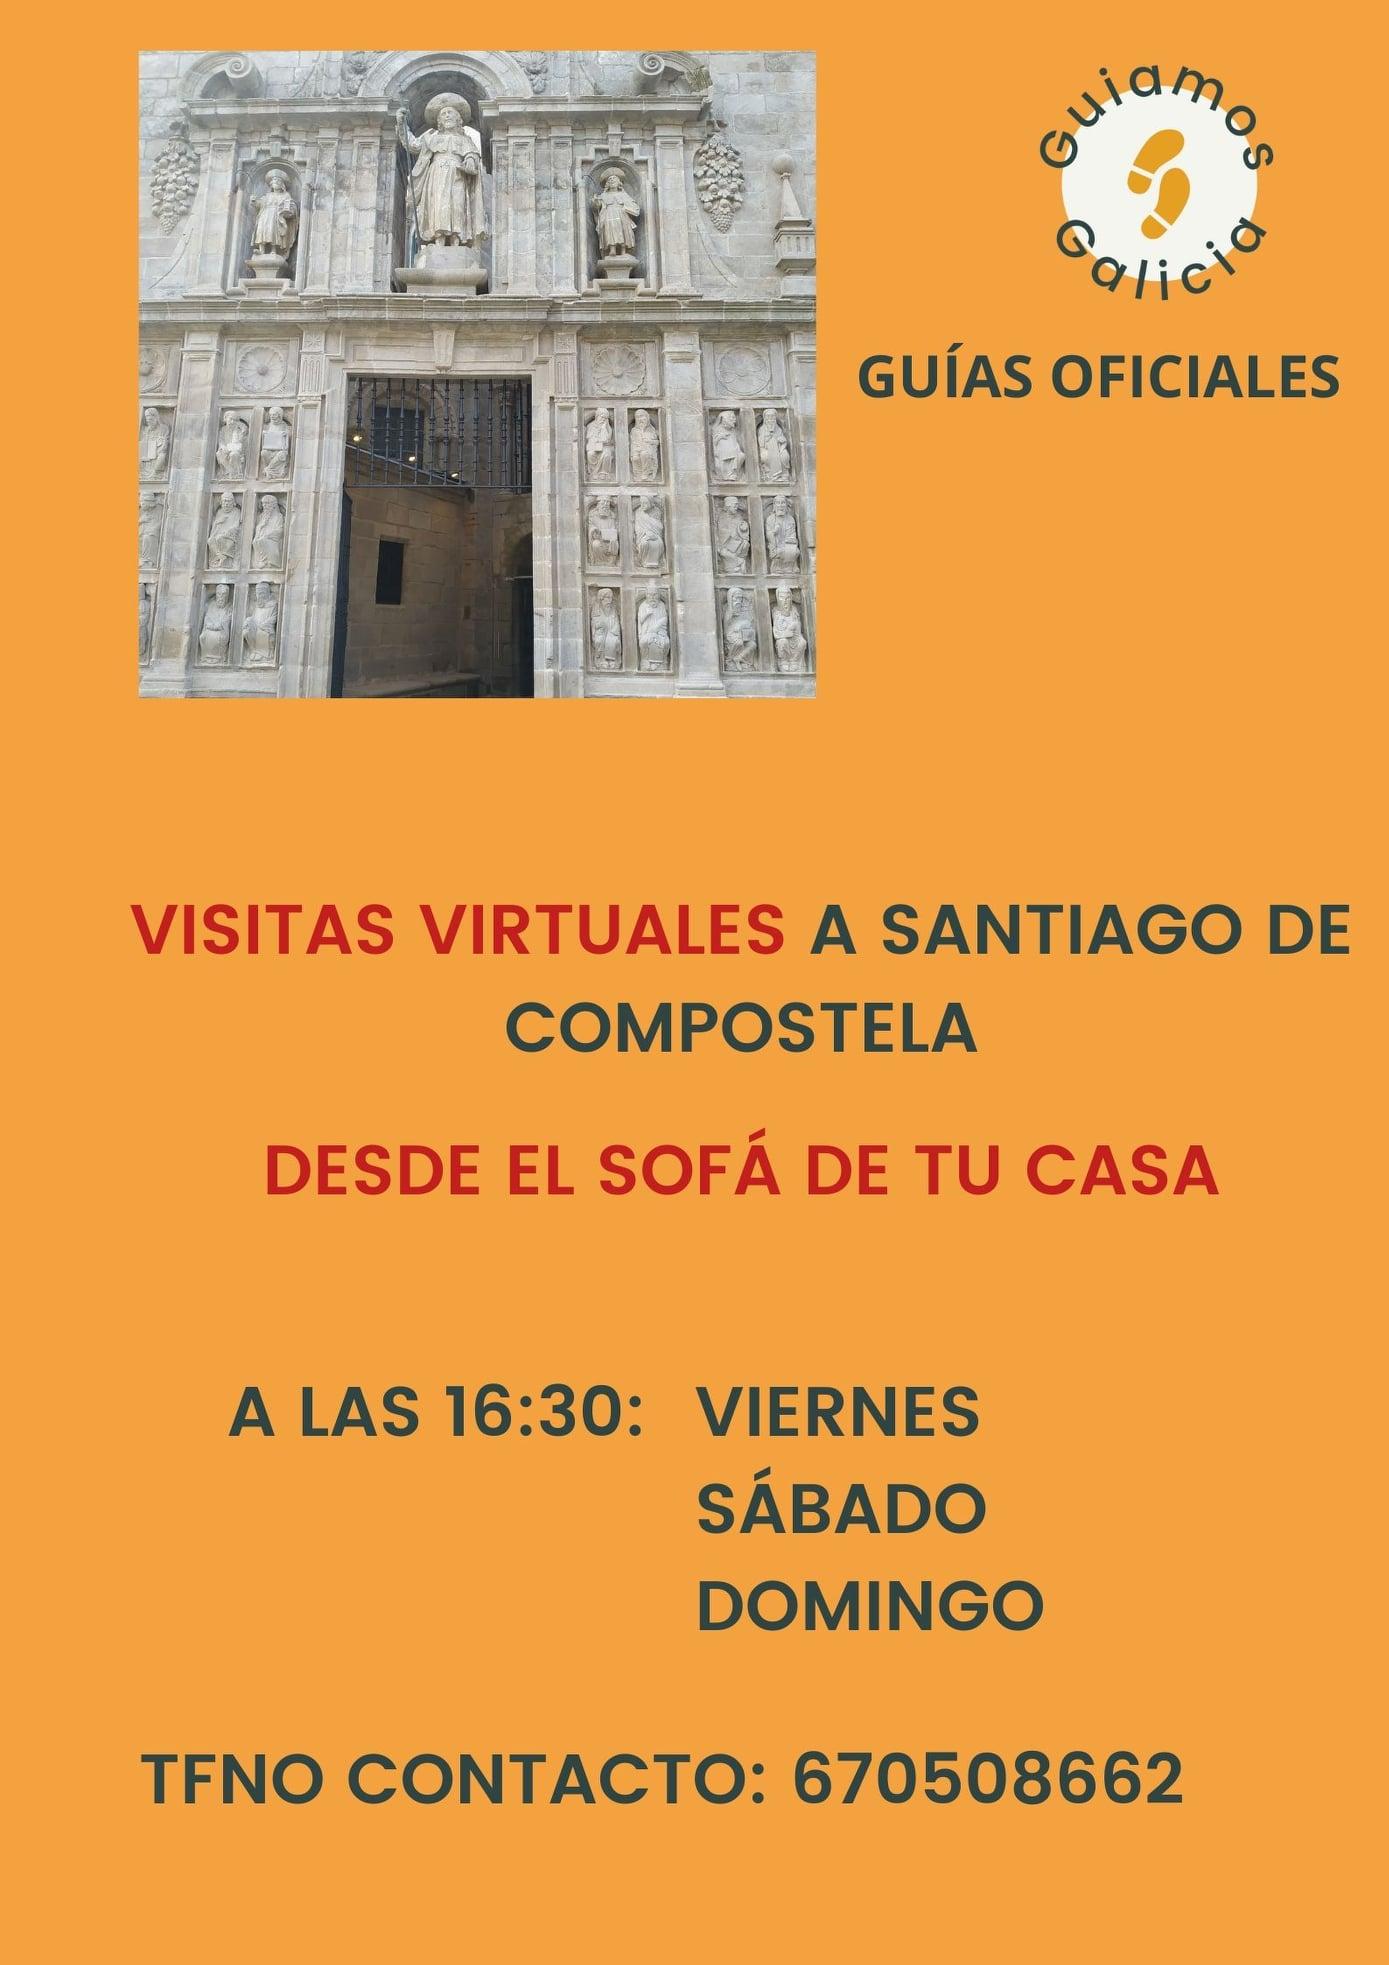 Imagen promocional de las visitas virtuales de Guiamos Galicia (Cedida).